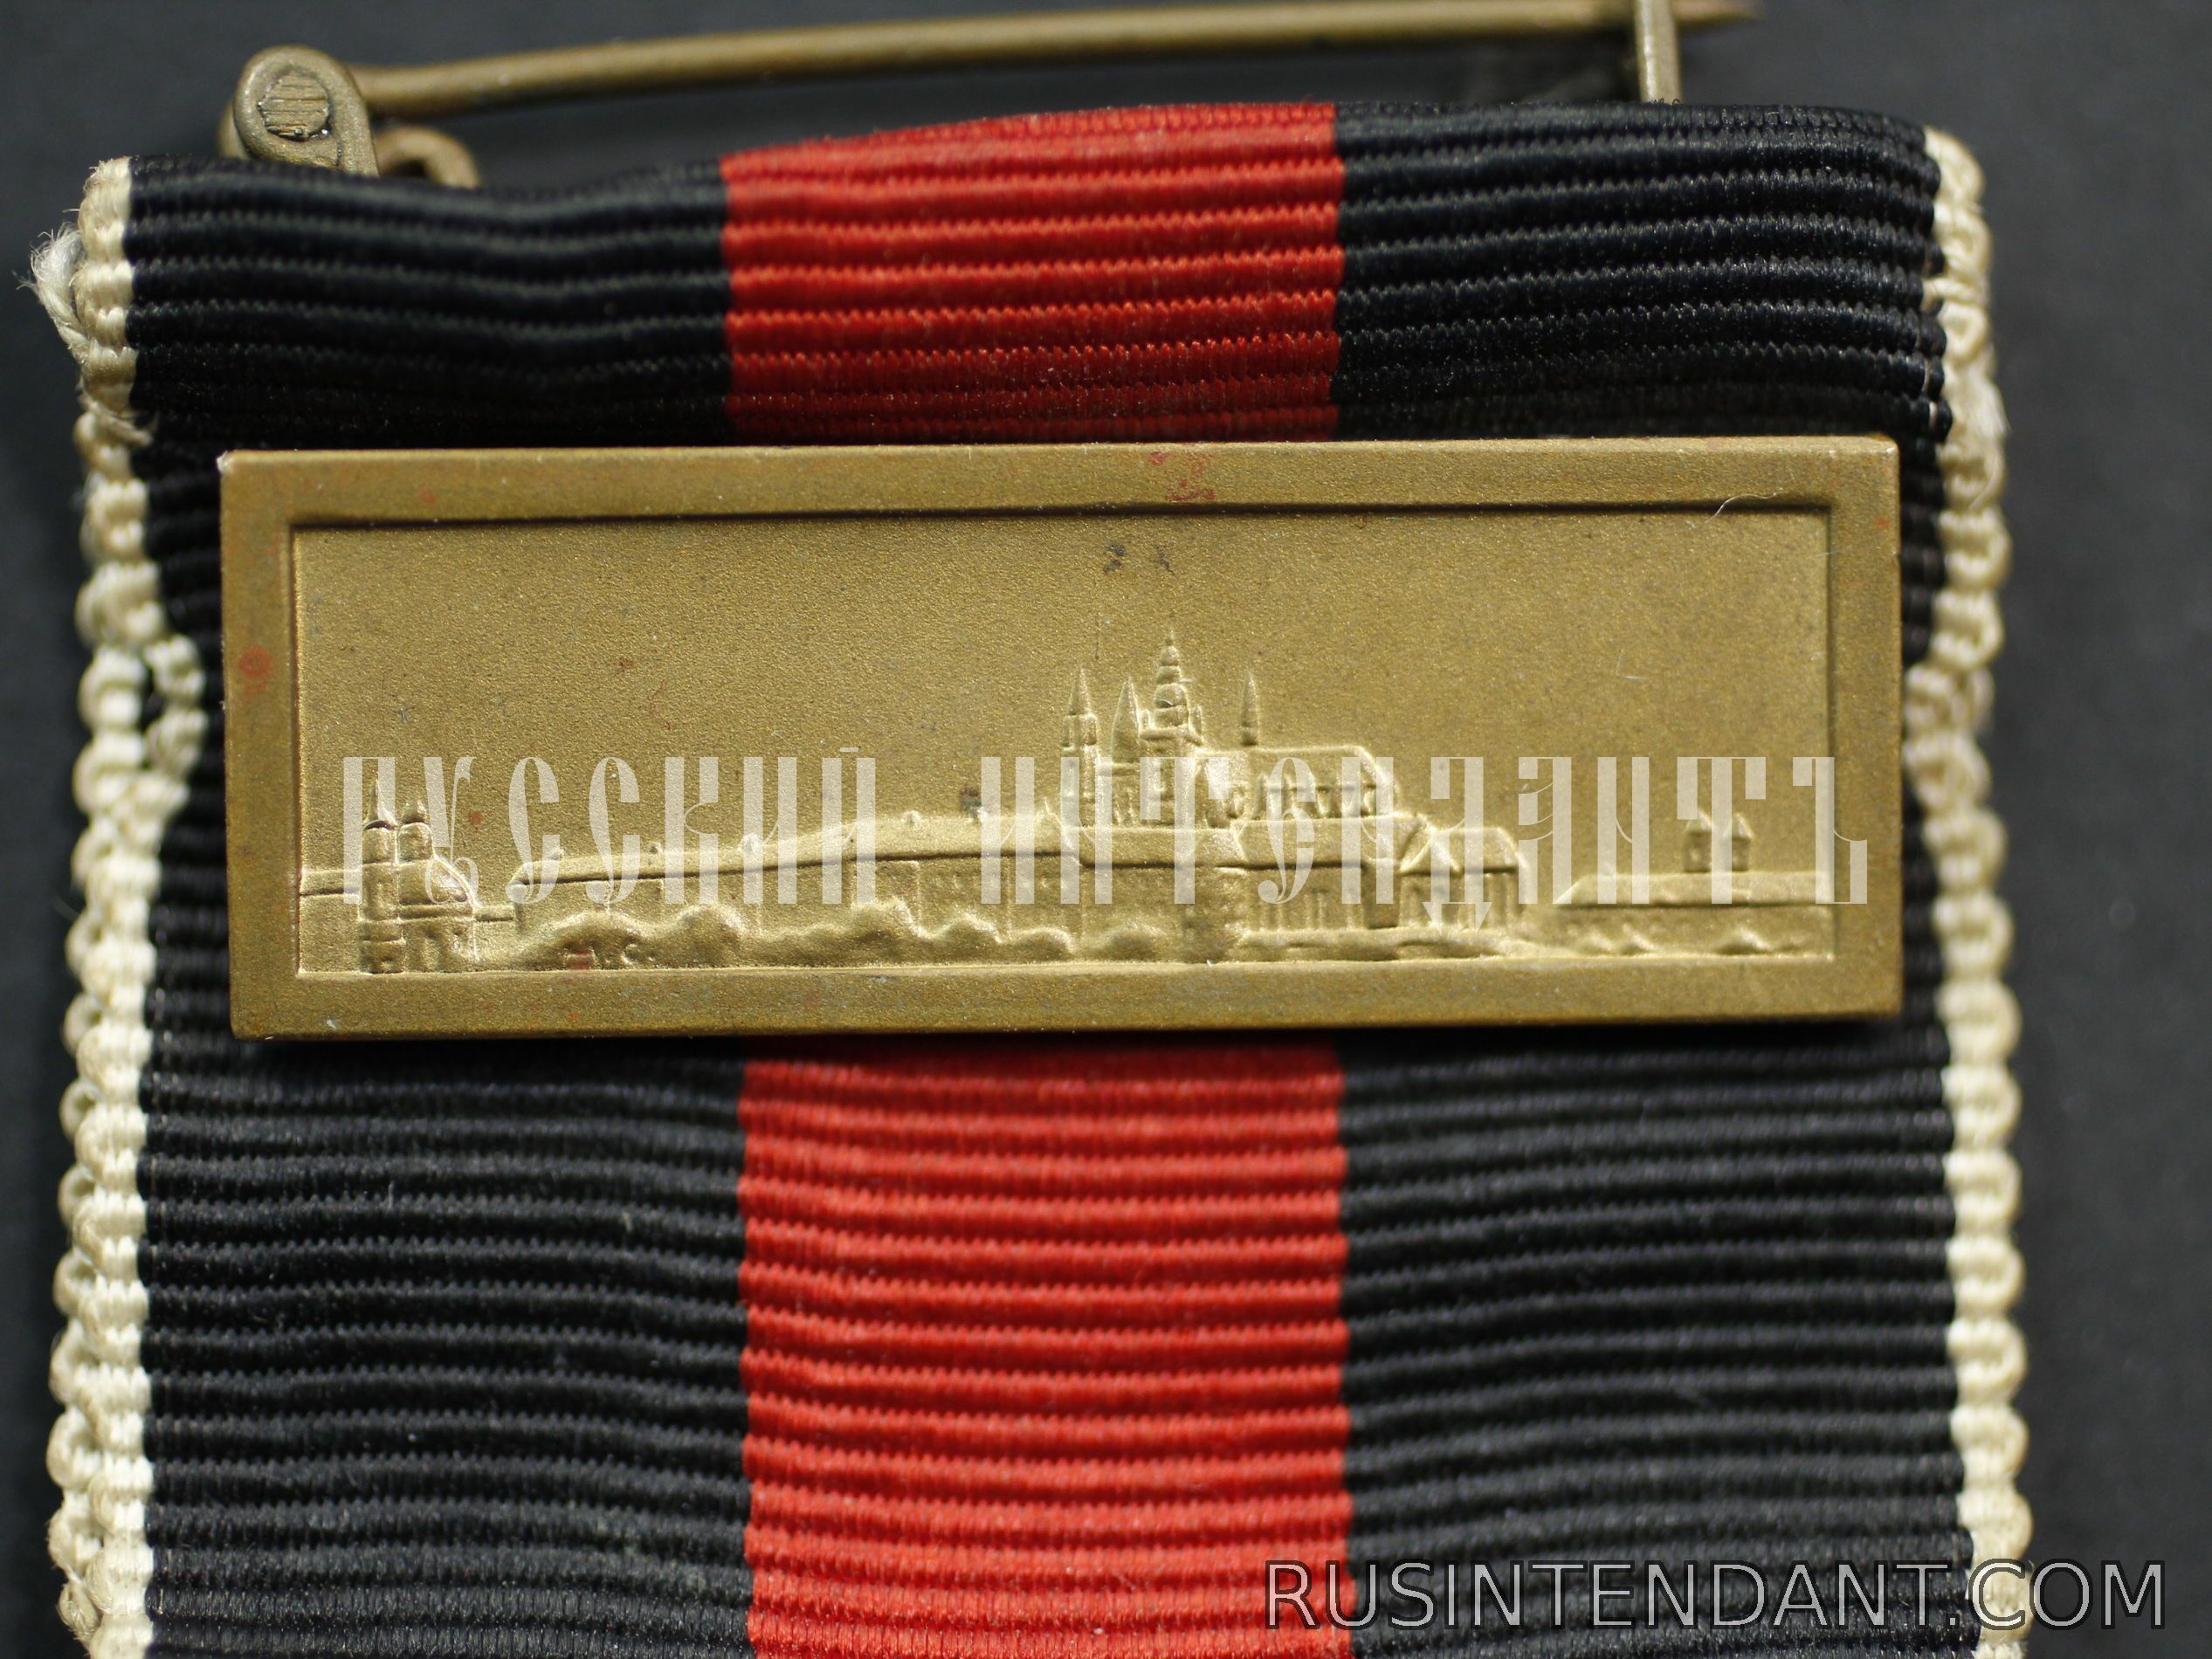 Фото 6: Медаль "В память 1 октября 1938 года" со шпангой 